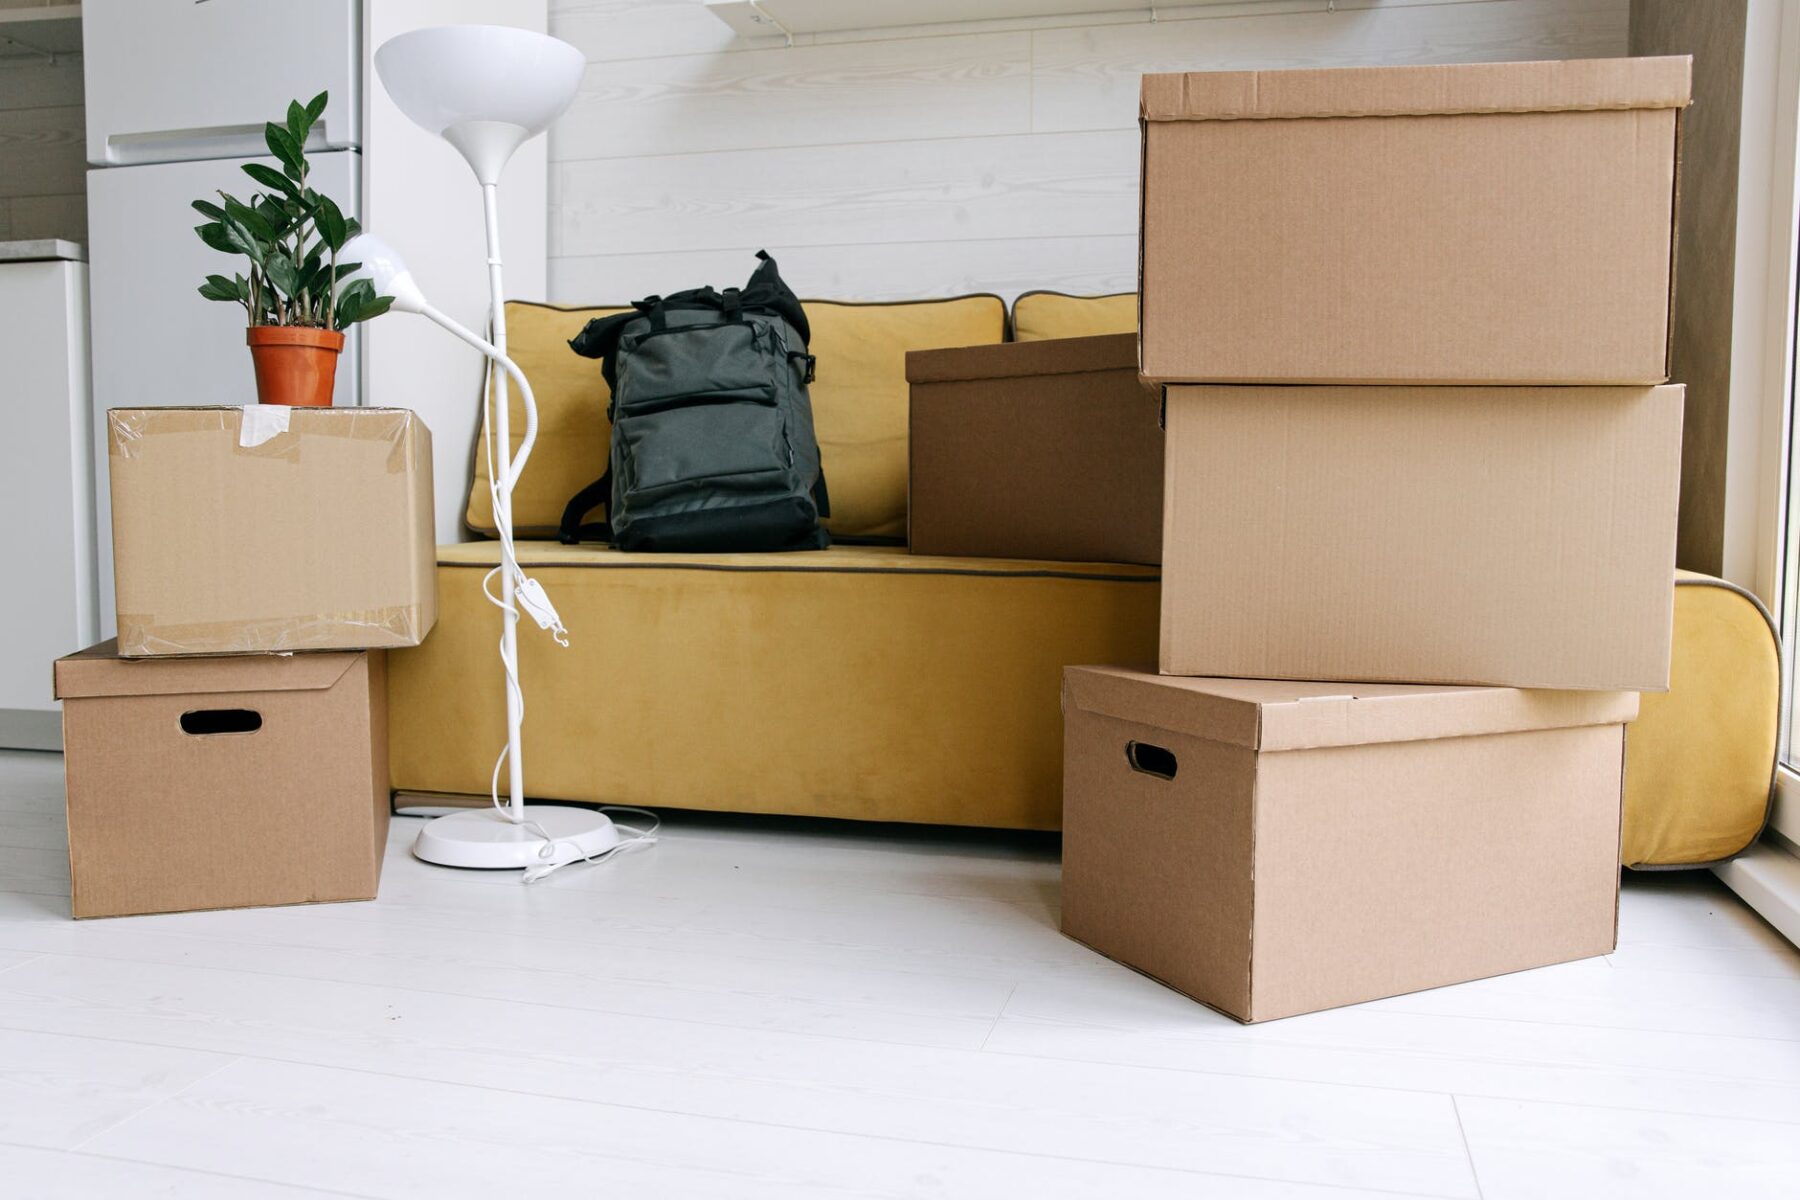 Упаковка вещей для переезда: как собрать и упаковать посуду, технику и мебель, в чем перевозить